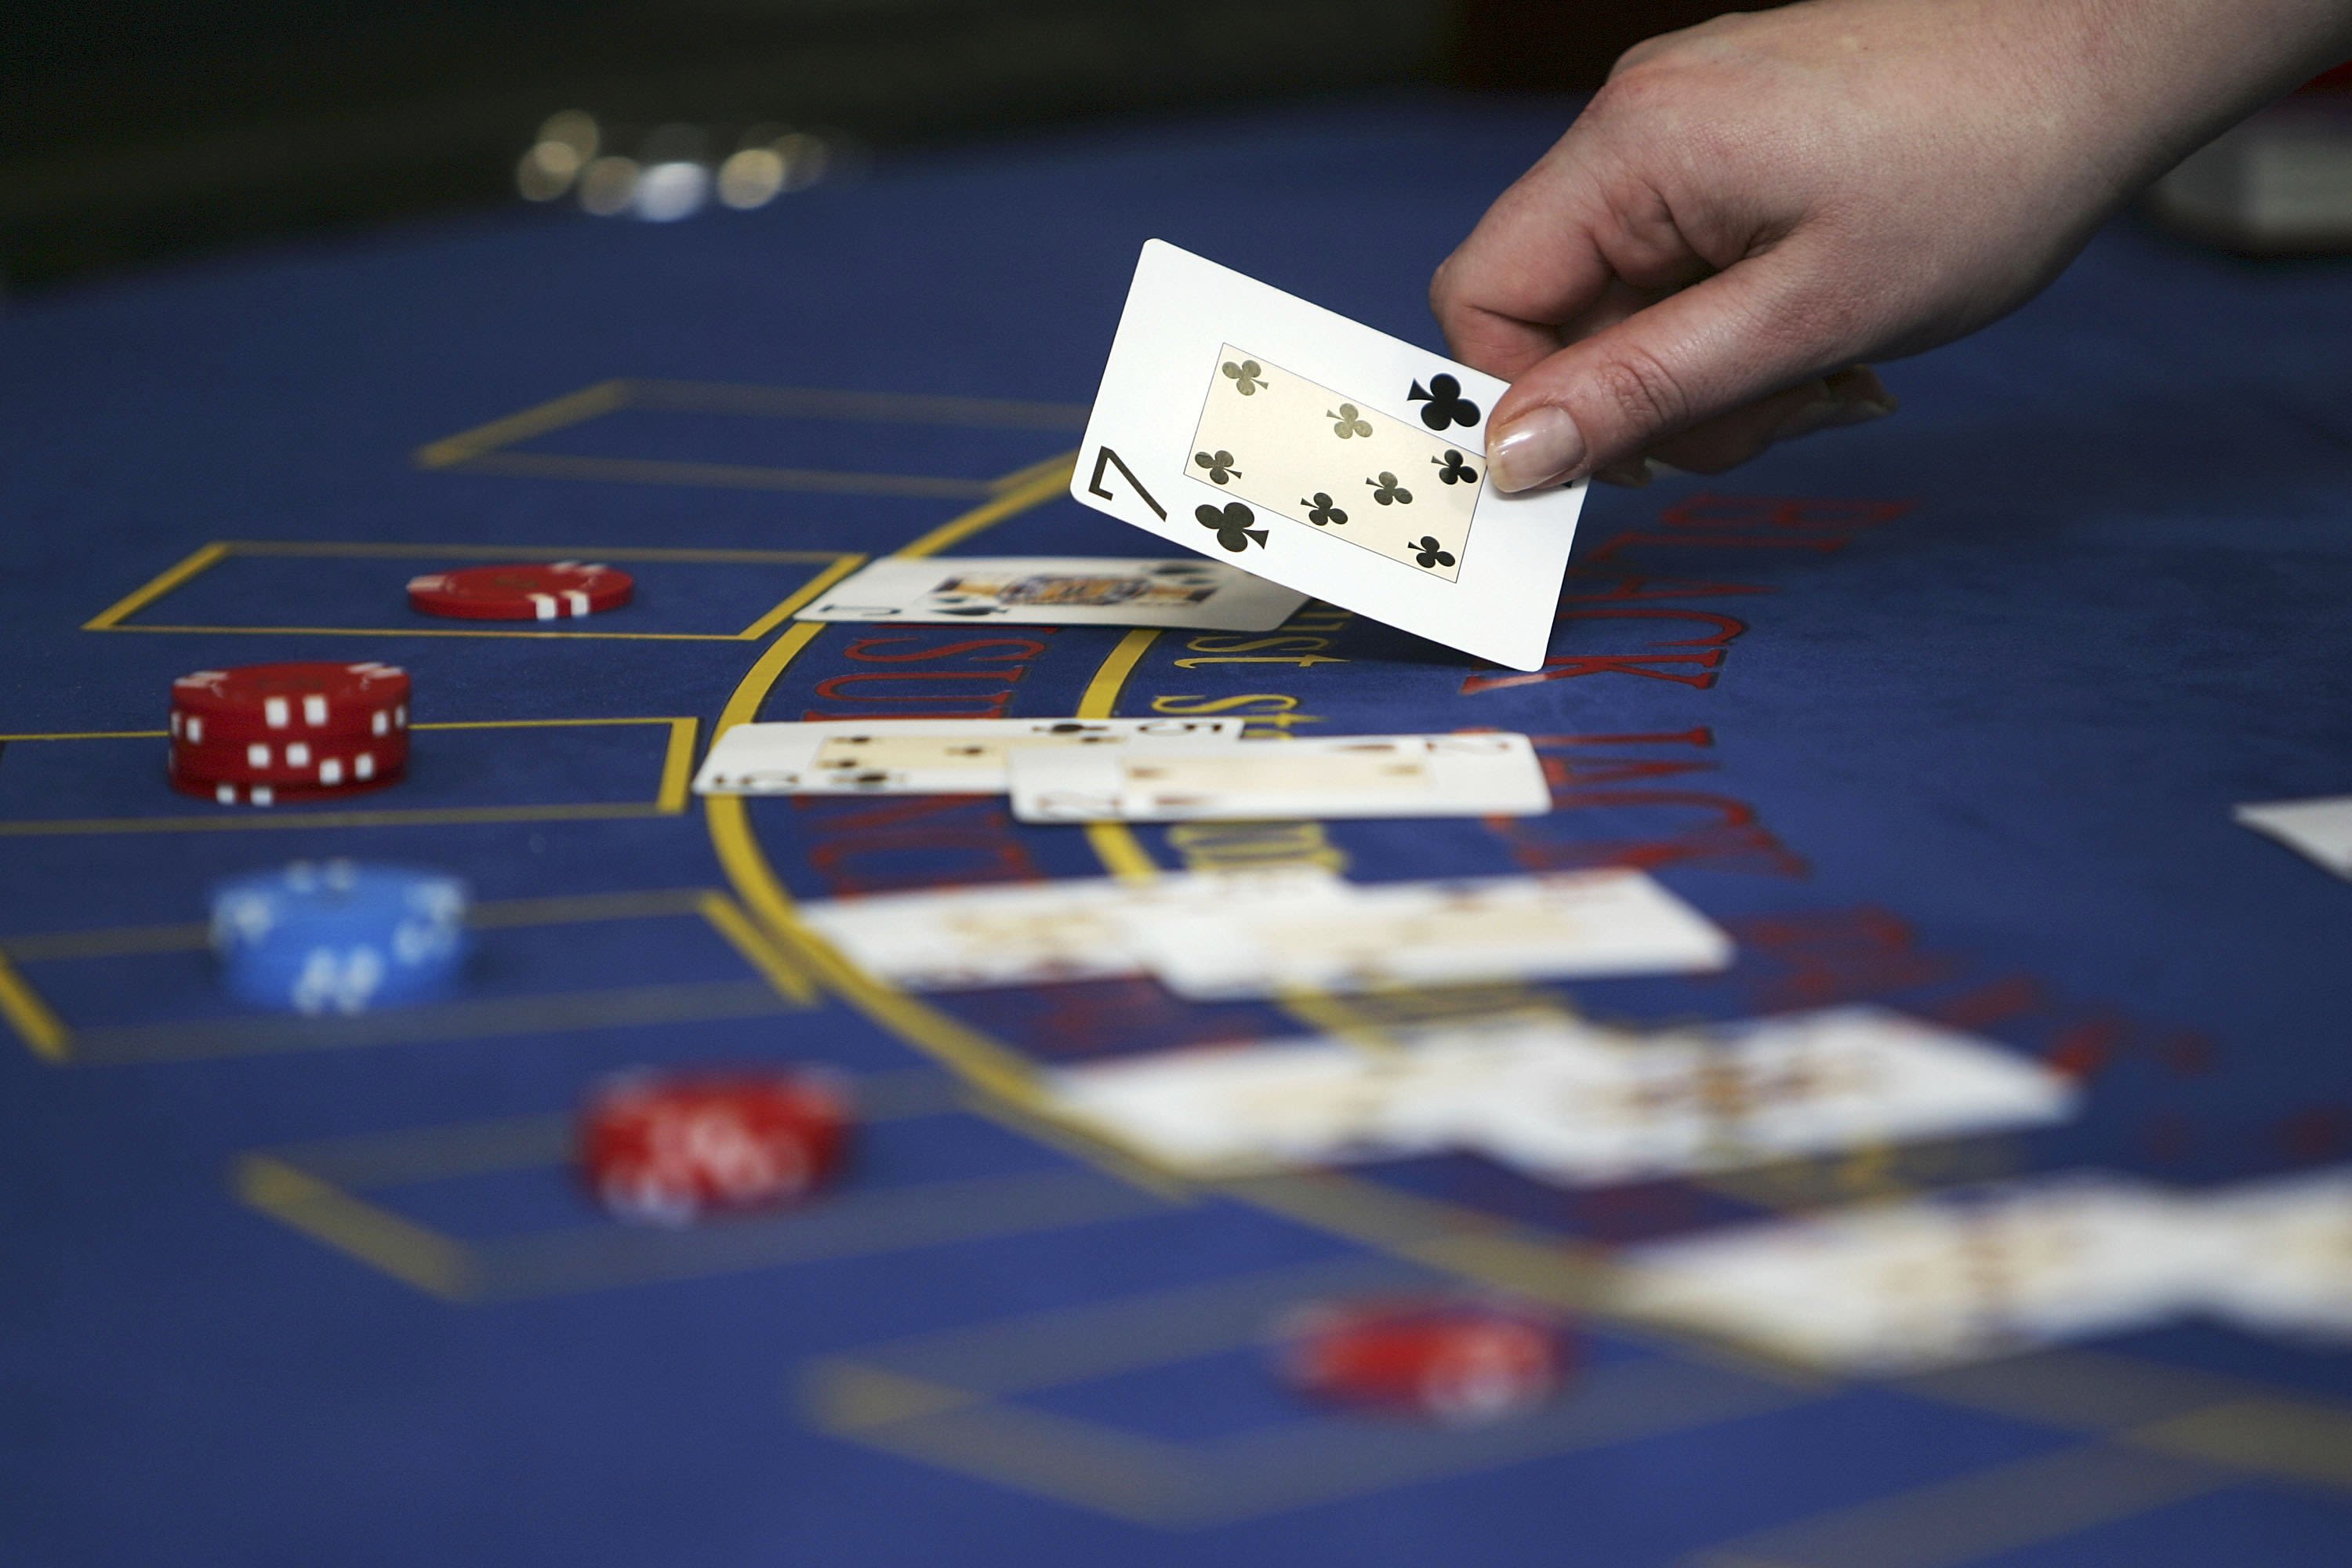 Vegas Poker Playing Card - 2 ct